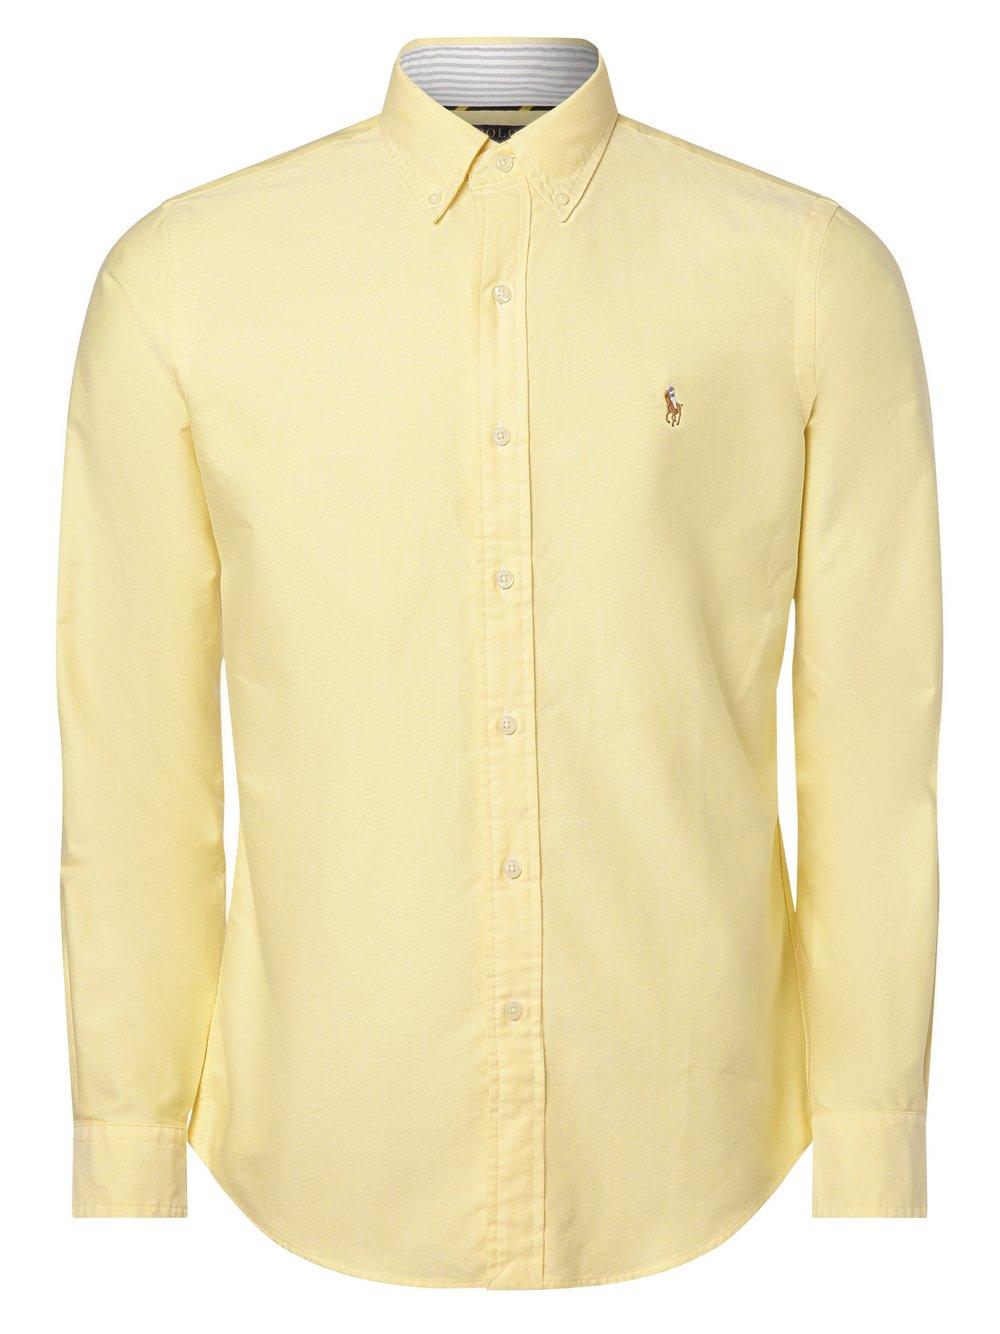 Polo Ralph Lauren Hemd Herren Modern Fit Baumwolle Button-Down Button-Down strukturiert, zitrone von Polo Ralph Lauren